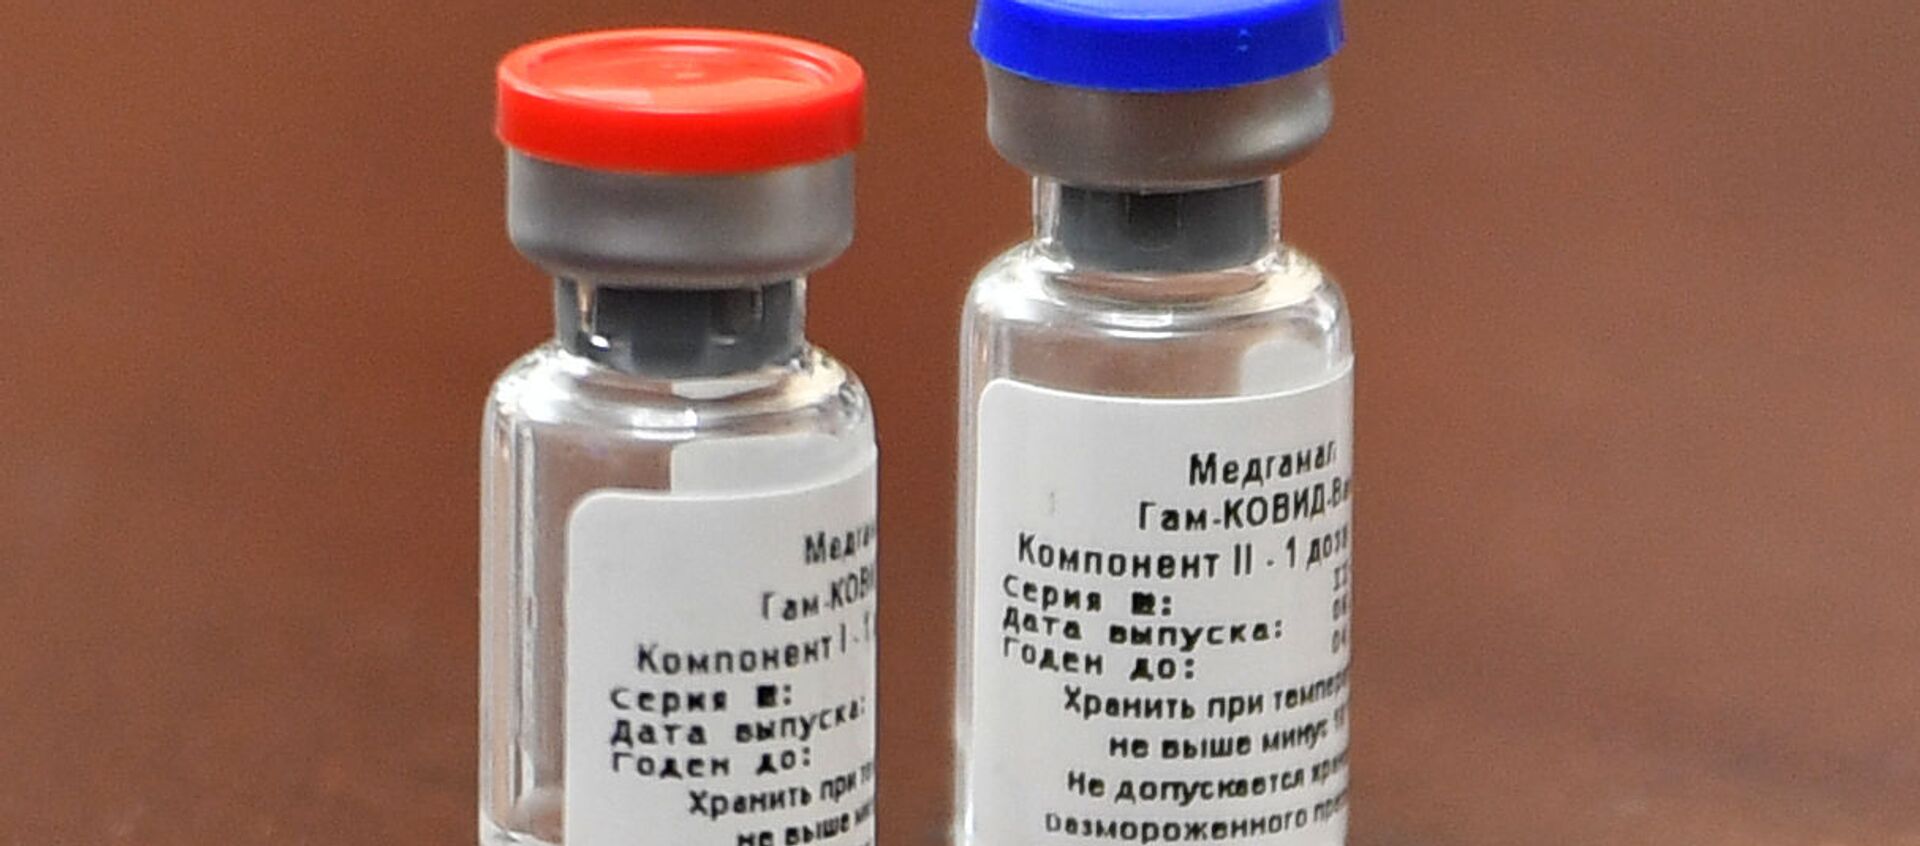 آلمان از خواستار تهیه واکسین اسپوتنیک وی روسی شد - اسپوتنیک افغانستان  , 1920, 25.03.2021